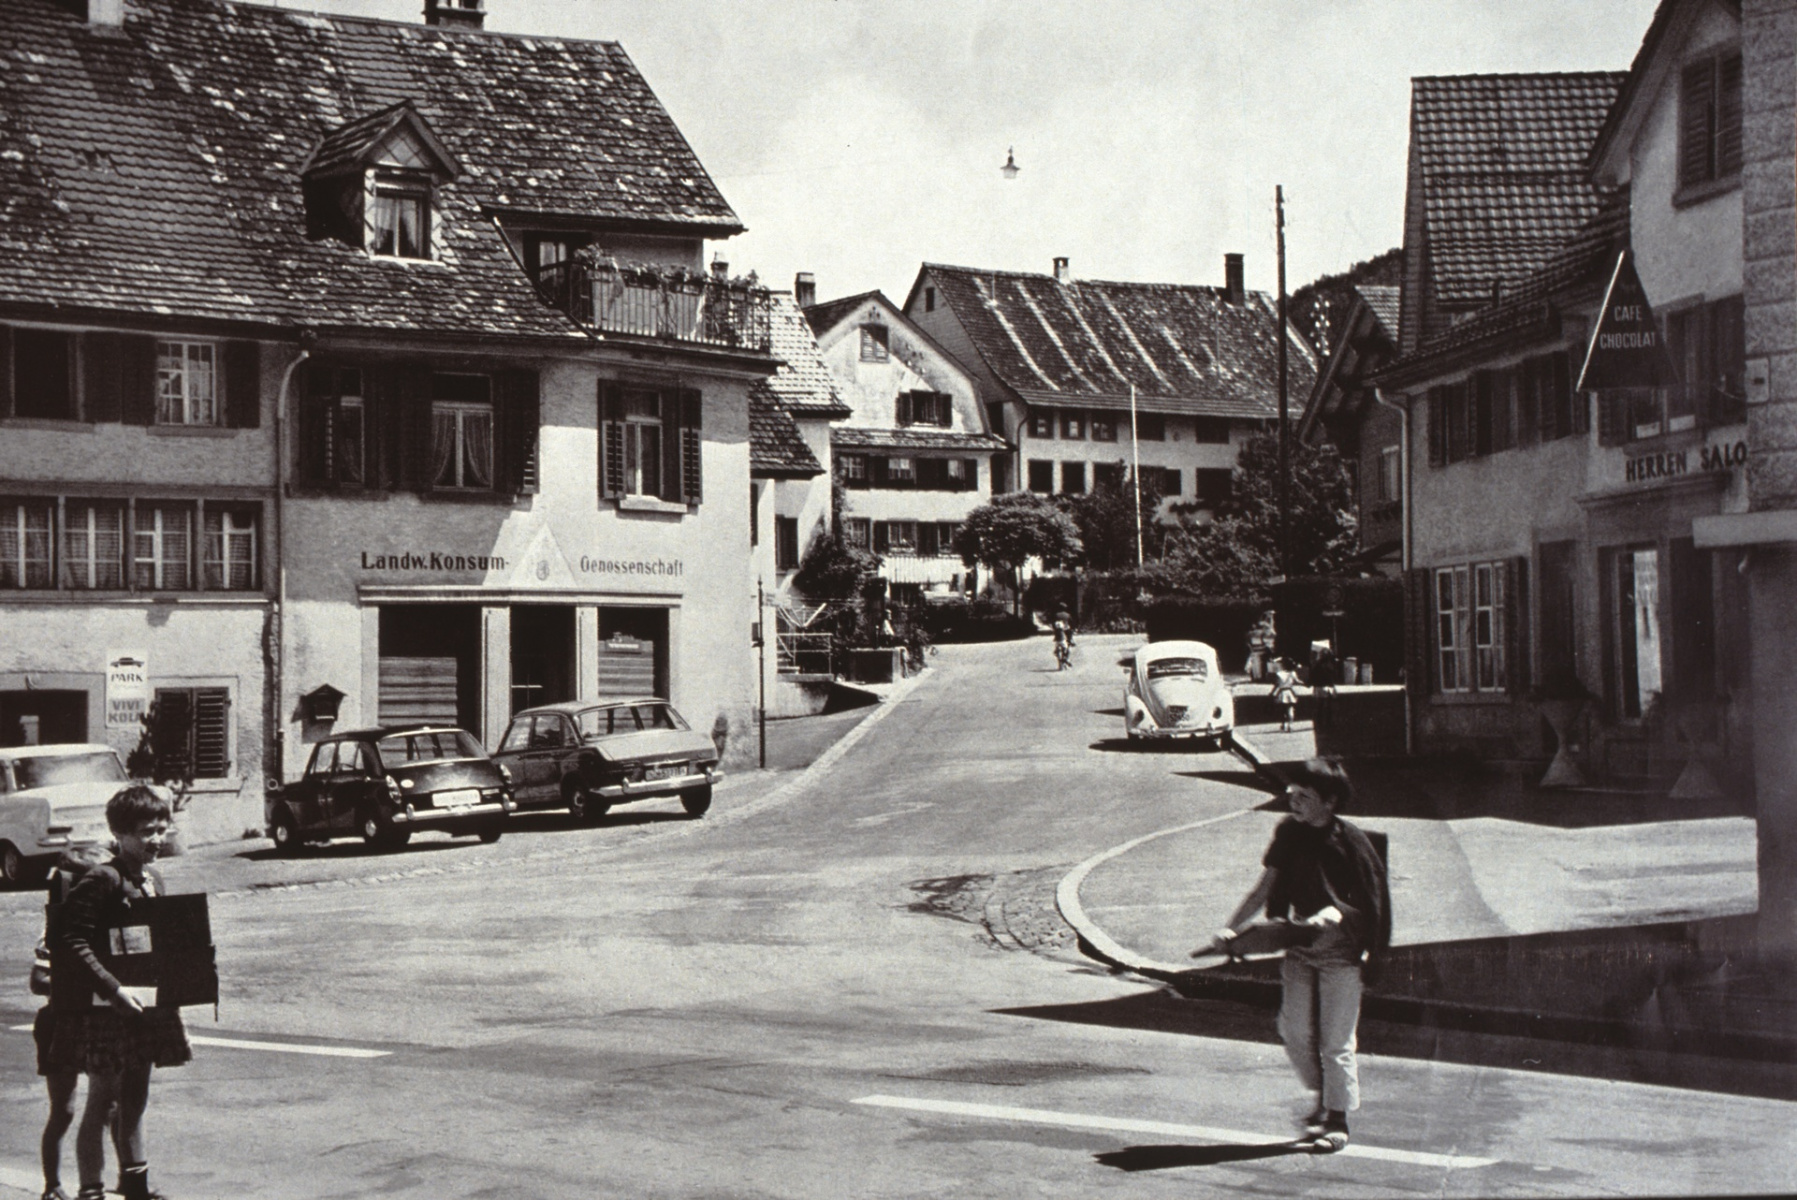 Bärenplatz, Bettswilerstr. Auch in Bäretswil hält das Auto um 1960 breiteren Einzug. Auf der Strasse nach Bettswil ist eine Mutter mit ihrem Töffli und dem Kind auf dem Gepäckträger zu erkennen.